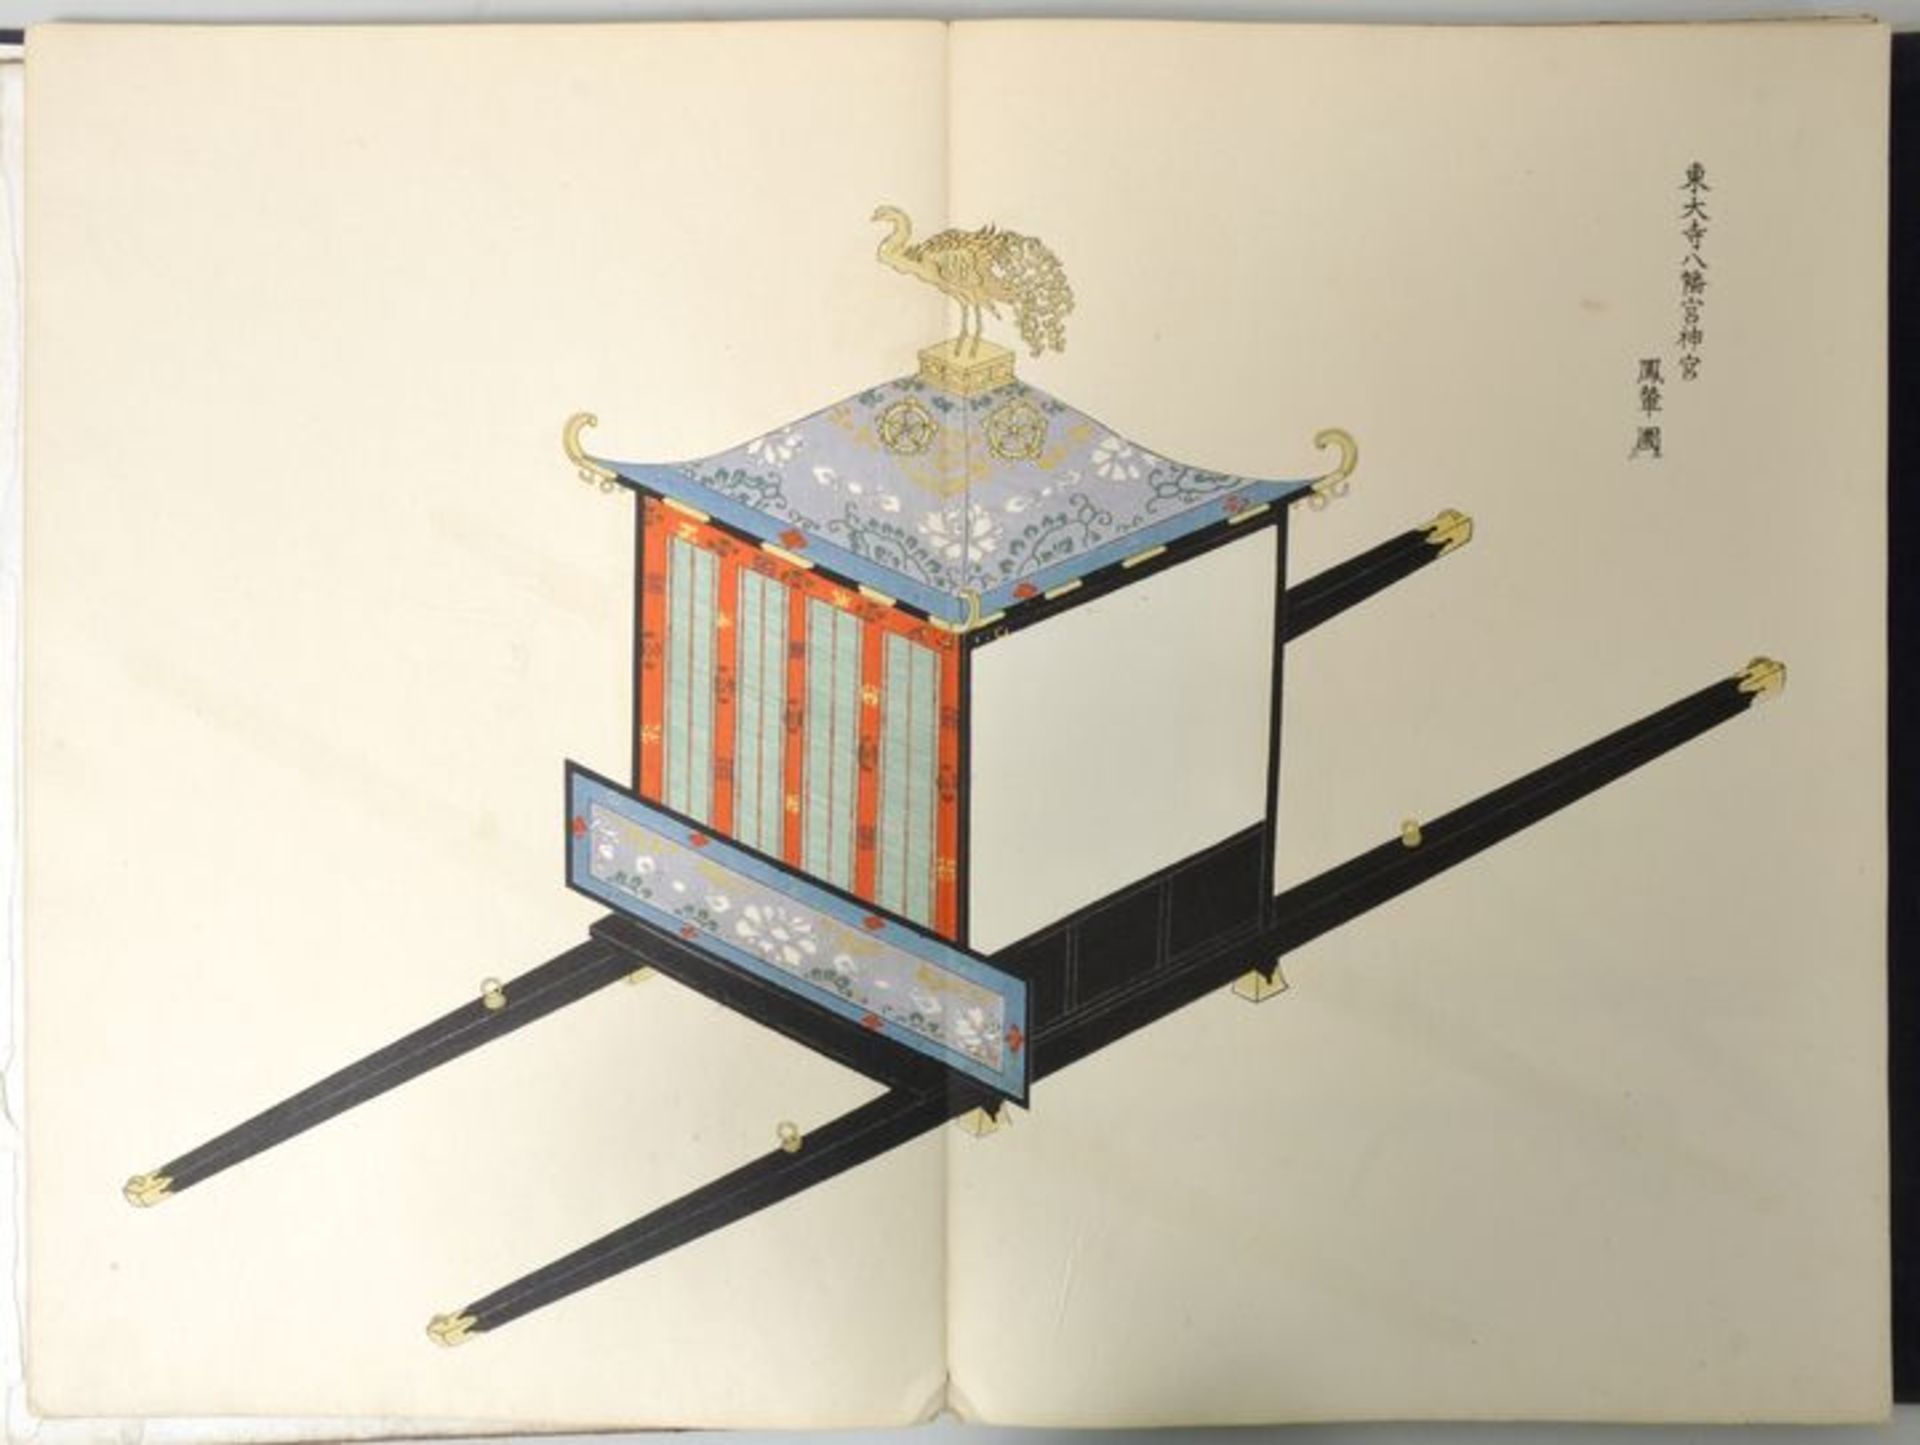 Yosha Zuko Fuzu, Japan, Periode Meiji (um 1900)Katalog mit Modellen luxuriöser Sänften und Kutschen.